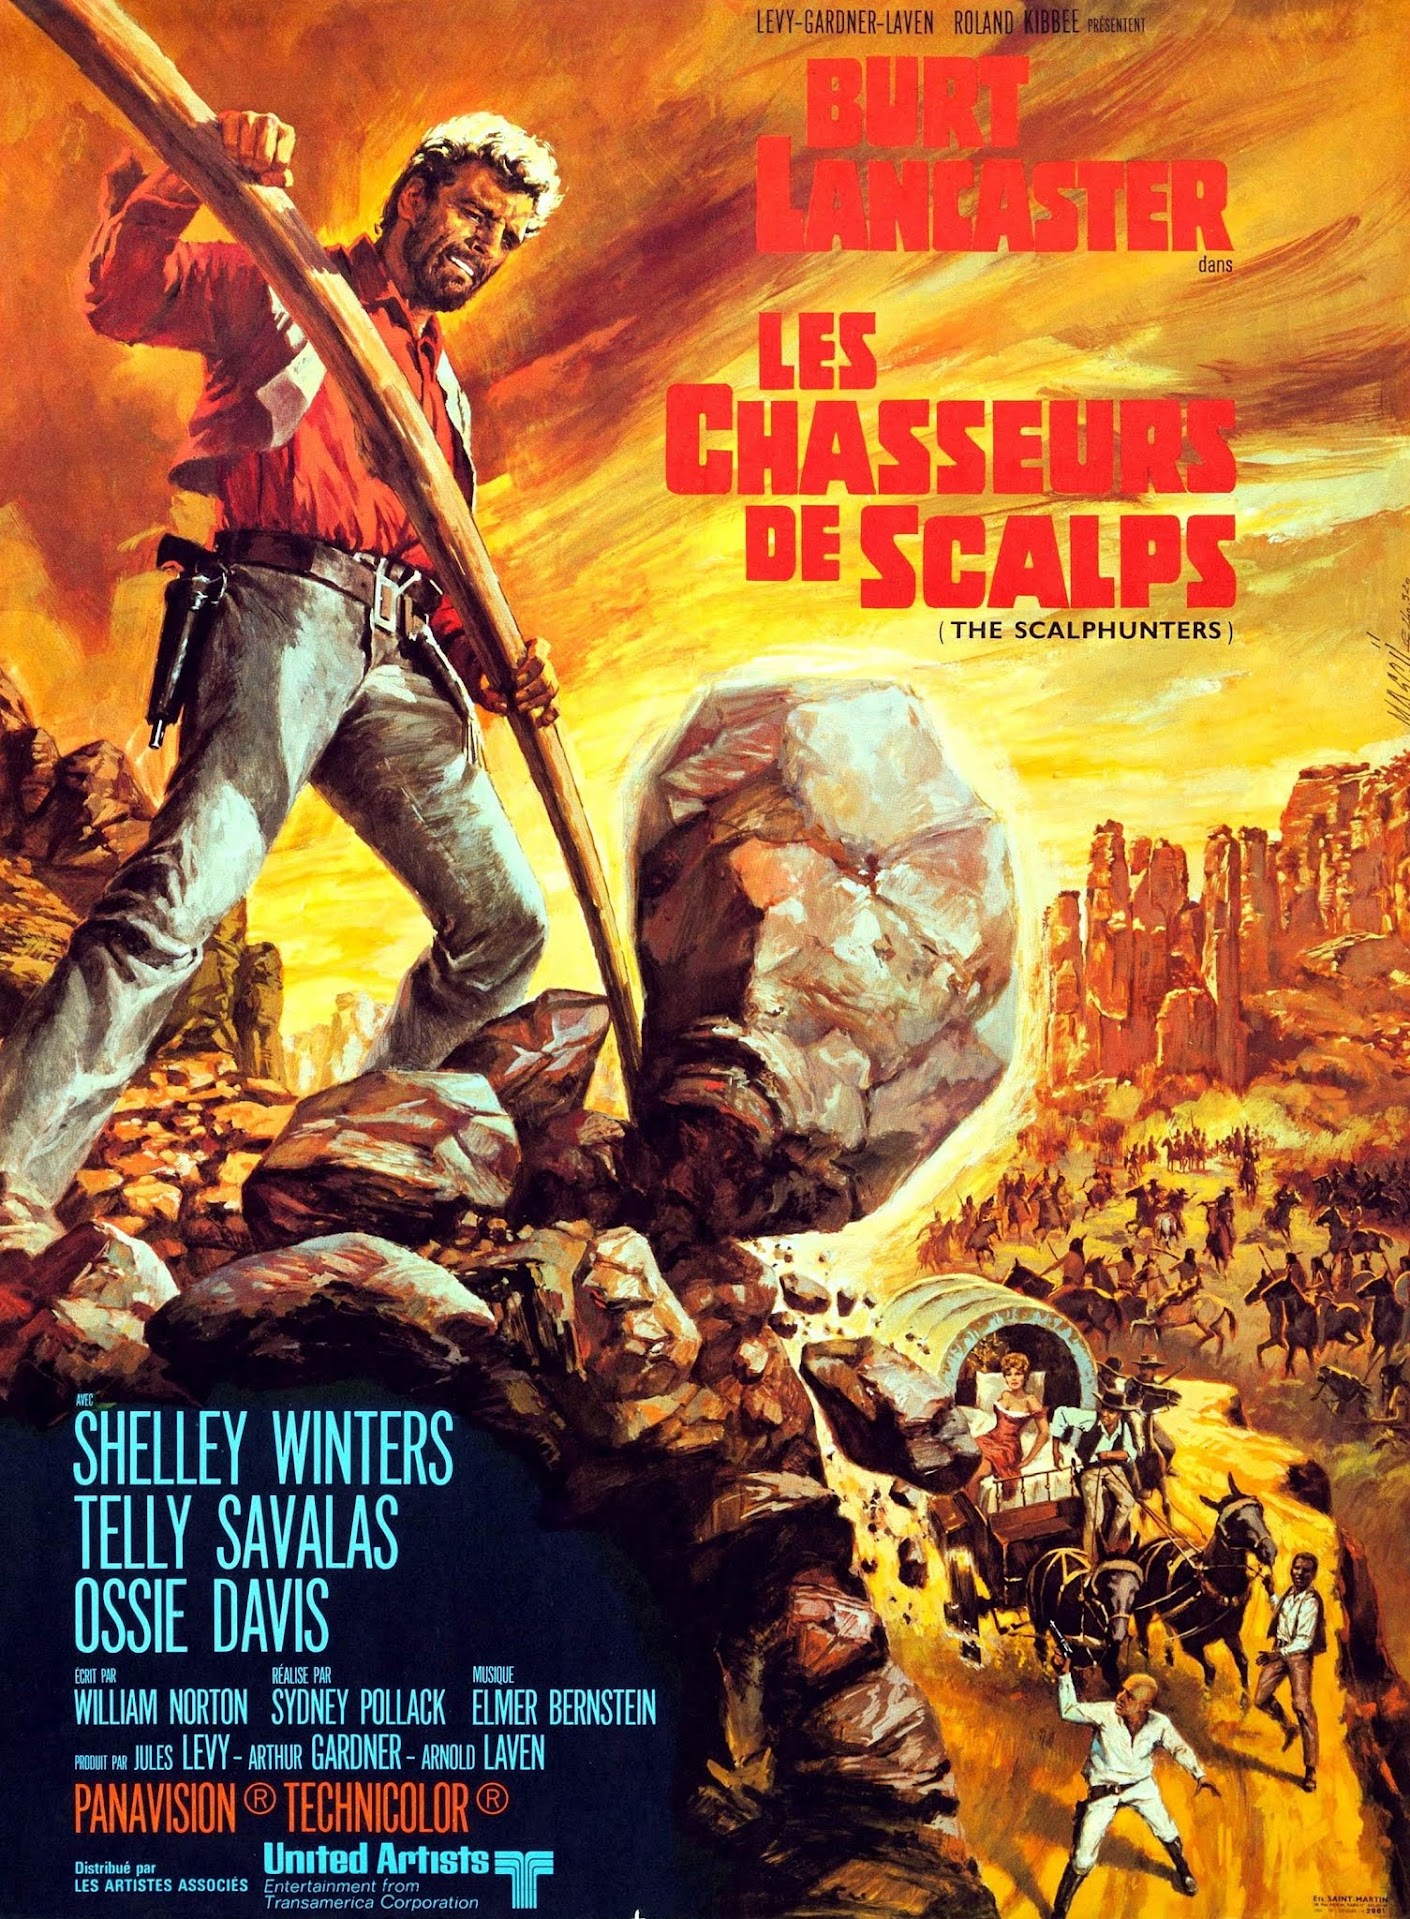 Les chasseurs de scalps (1967) Sydney Pollack - The scalphunters (03.1967 / 05.1967)